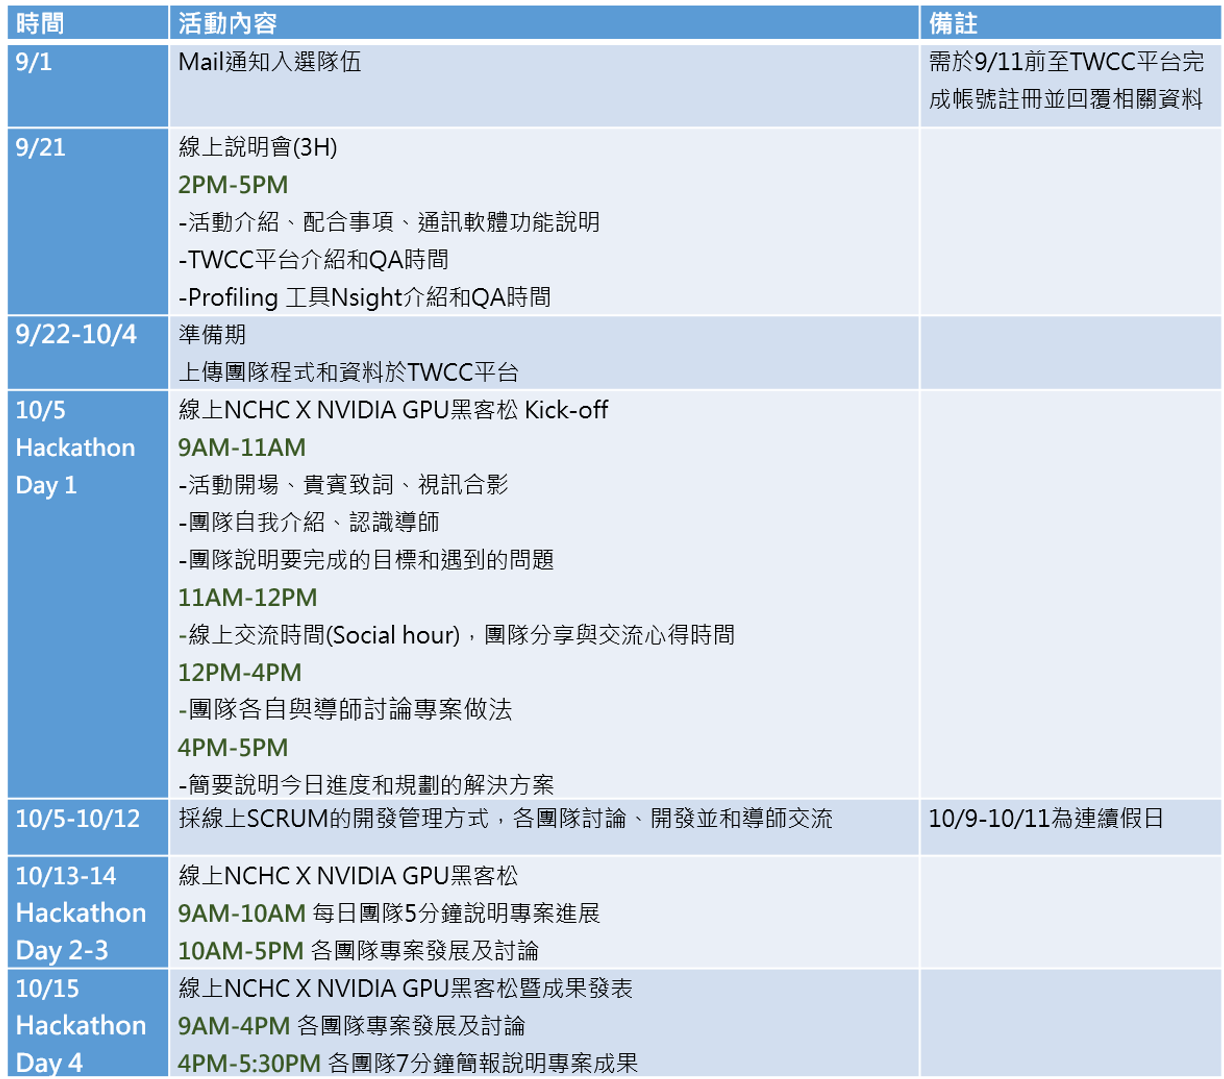 GPU黑客松日程表:9/1-10/15的活動規劃說明，包含入選通知時間和線上討論日期